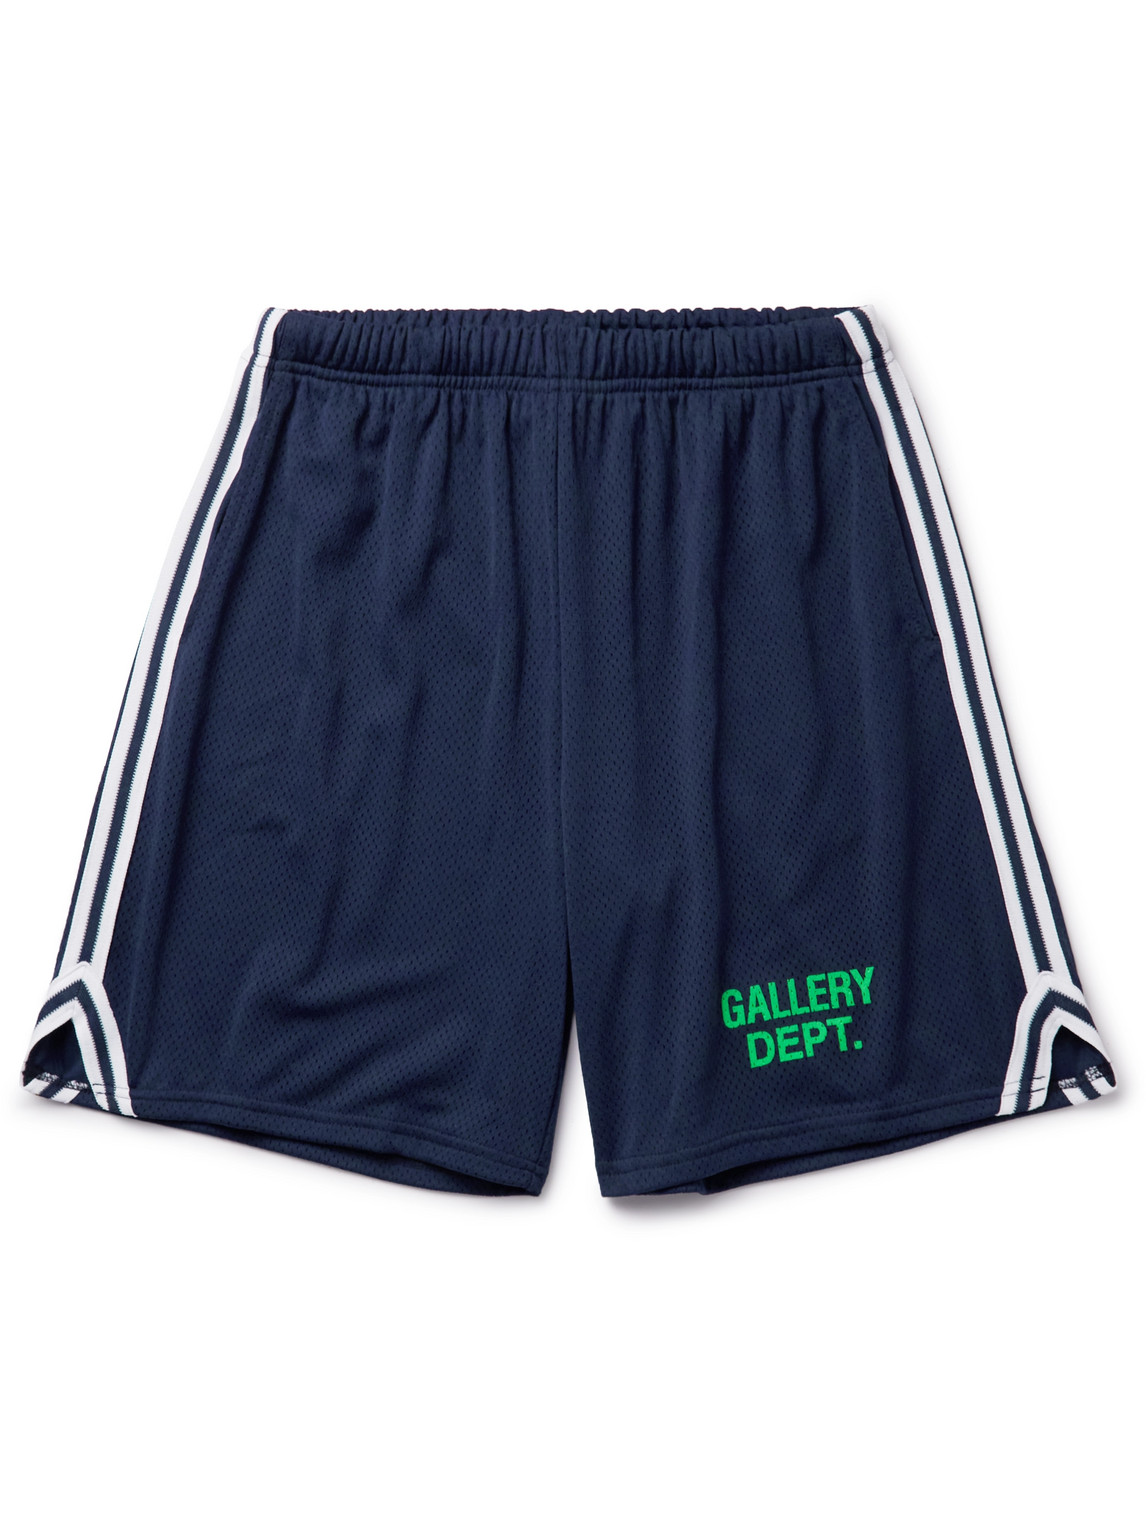 GALLERY DEPT. Shorts for Men | ModeSens